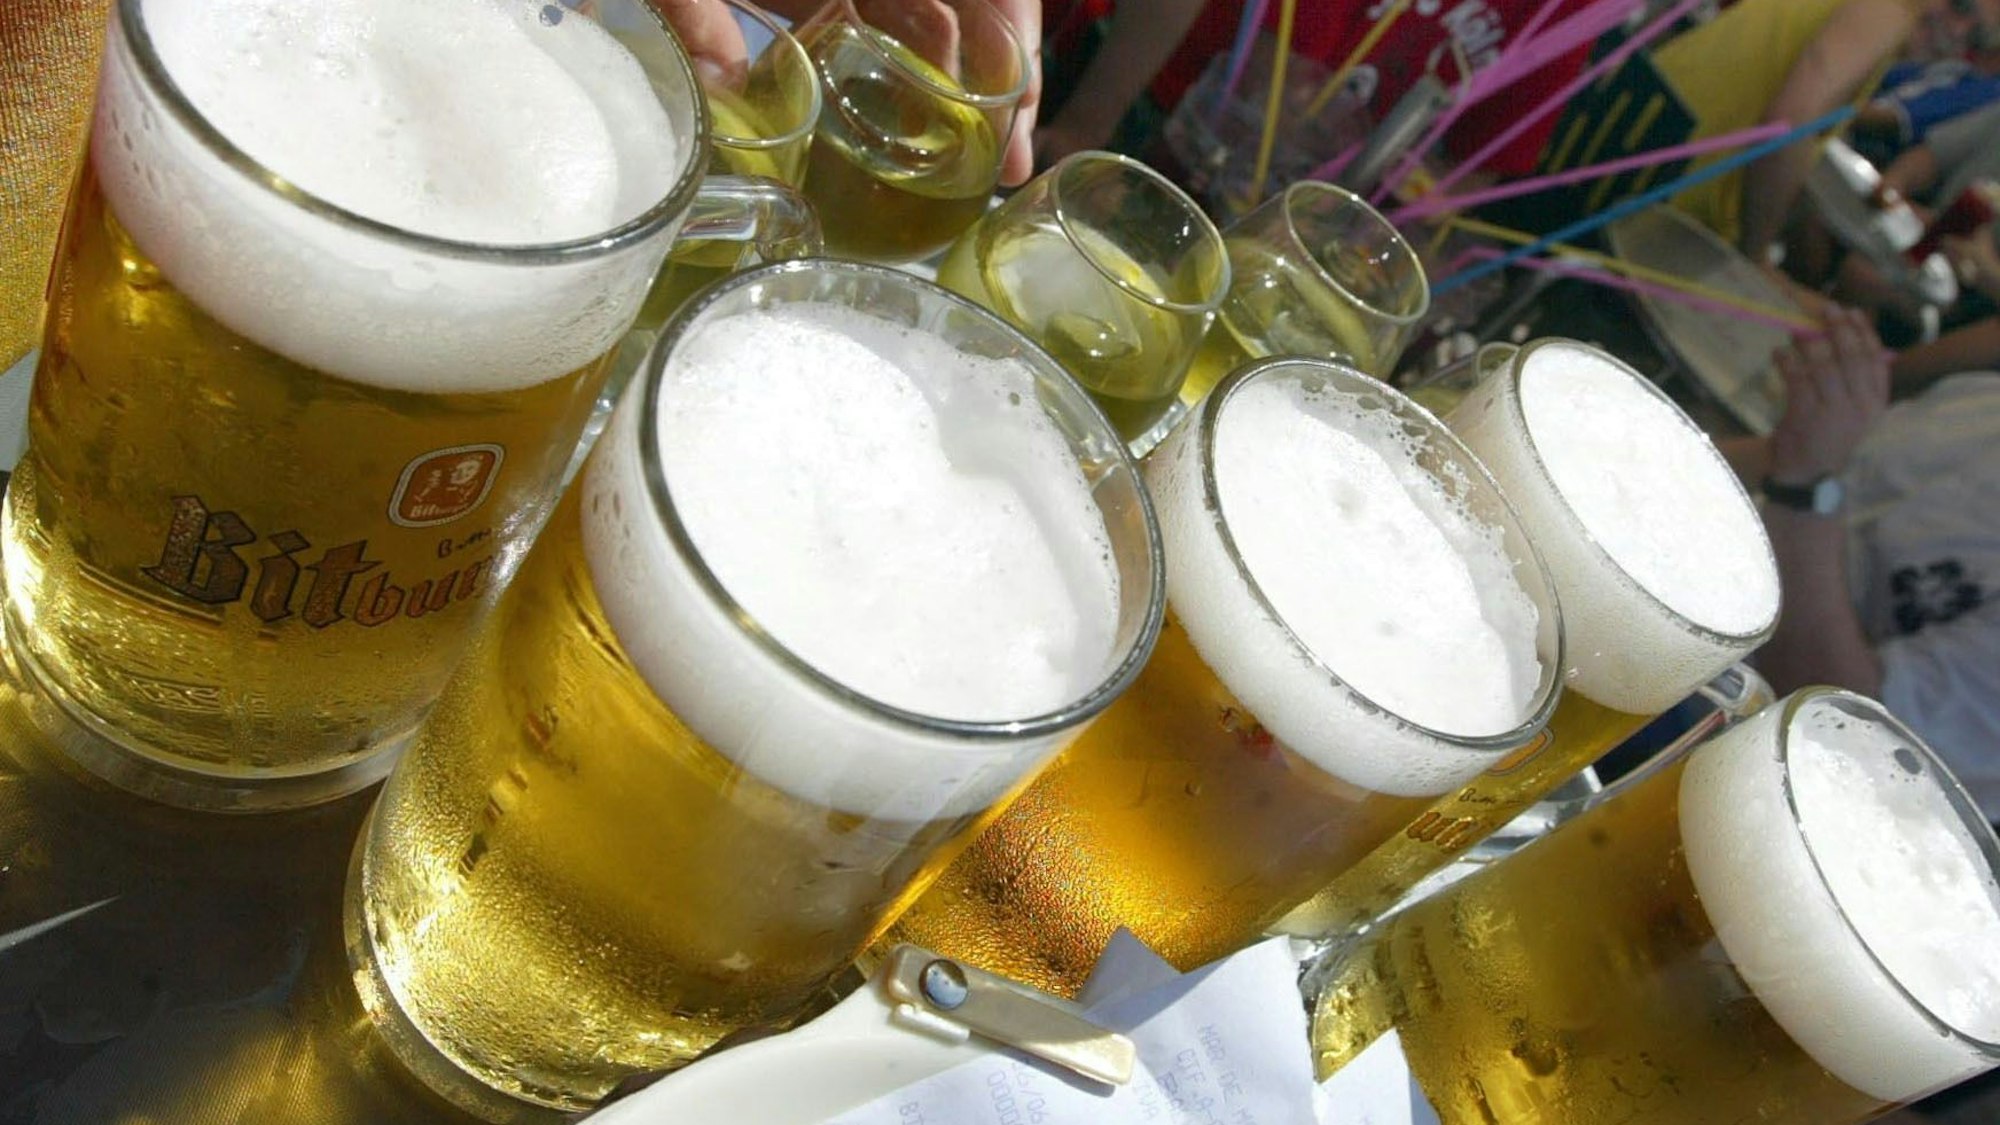 Das Symbolfoto aus dem Jahr 2003 zeigt mehrere gefüllte Bier- und Weingläser.